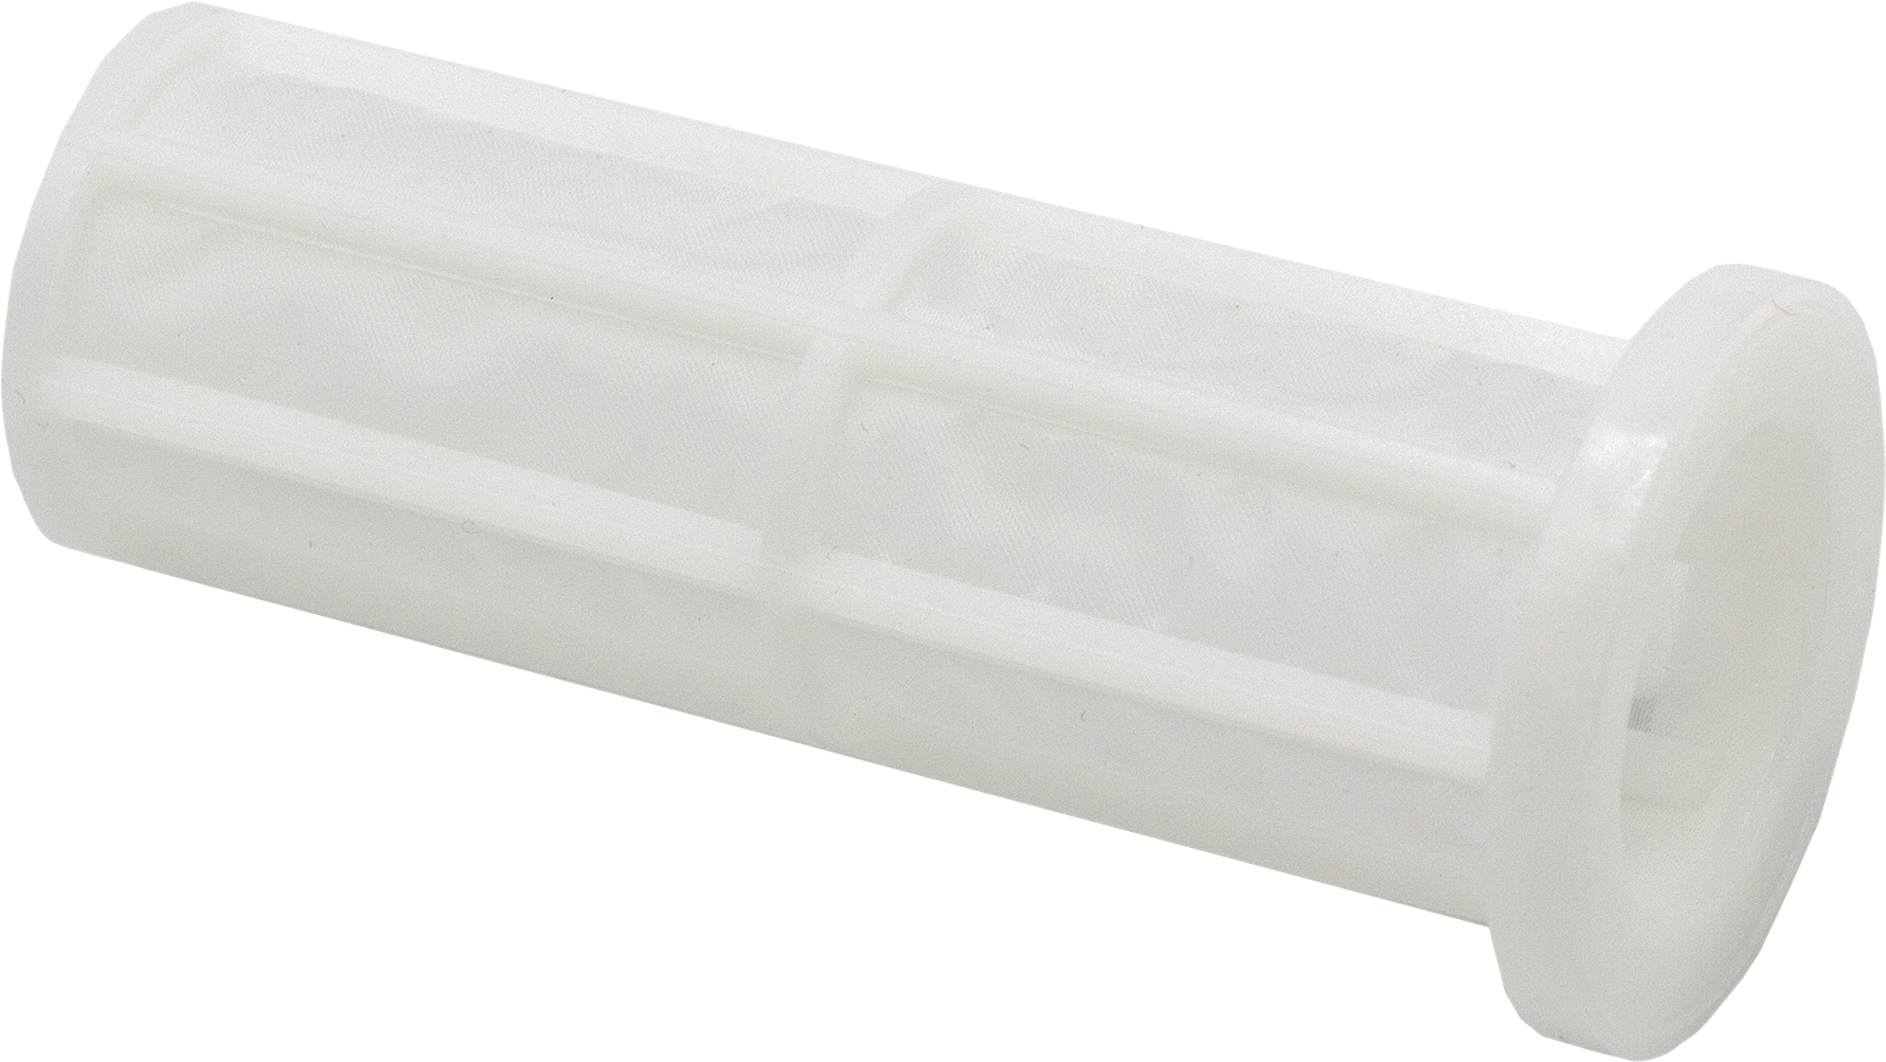 CARAFILL Filtereinsatz für Wasserfilter 15877 0,15 mm Maschenweite